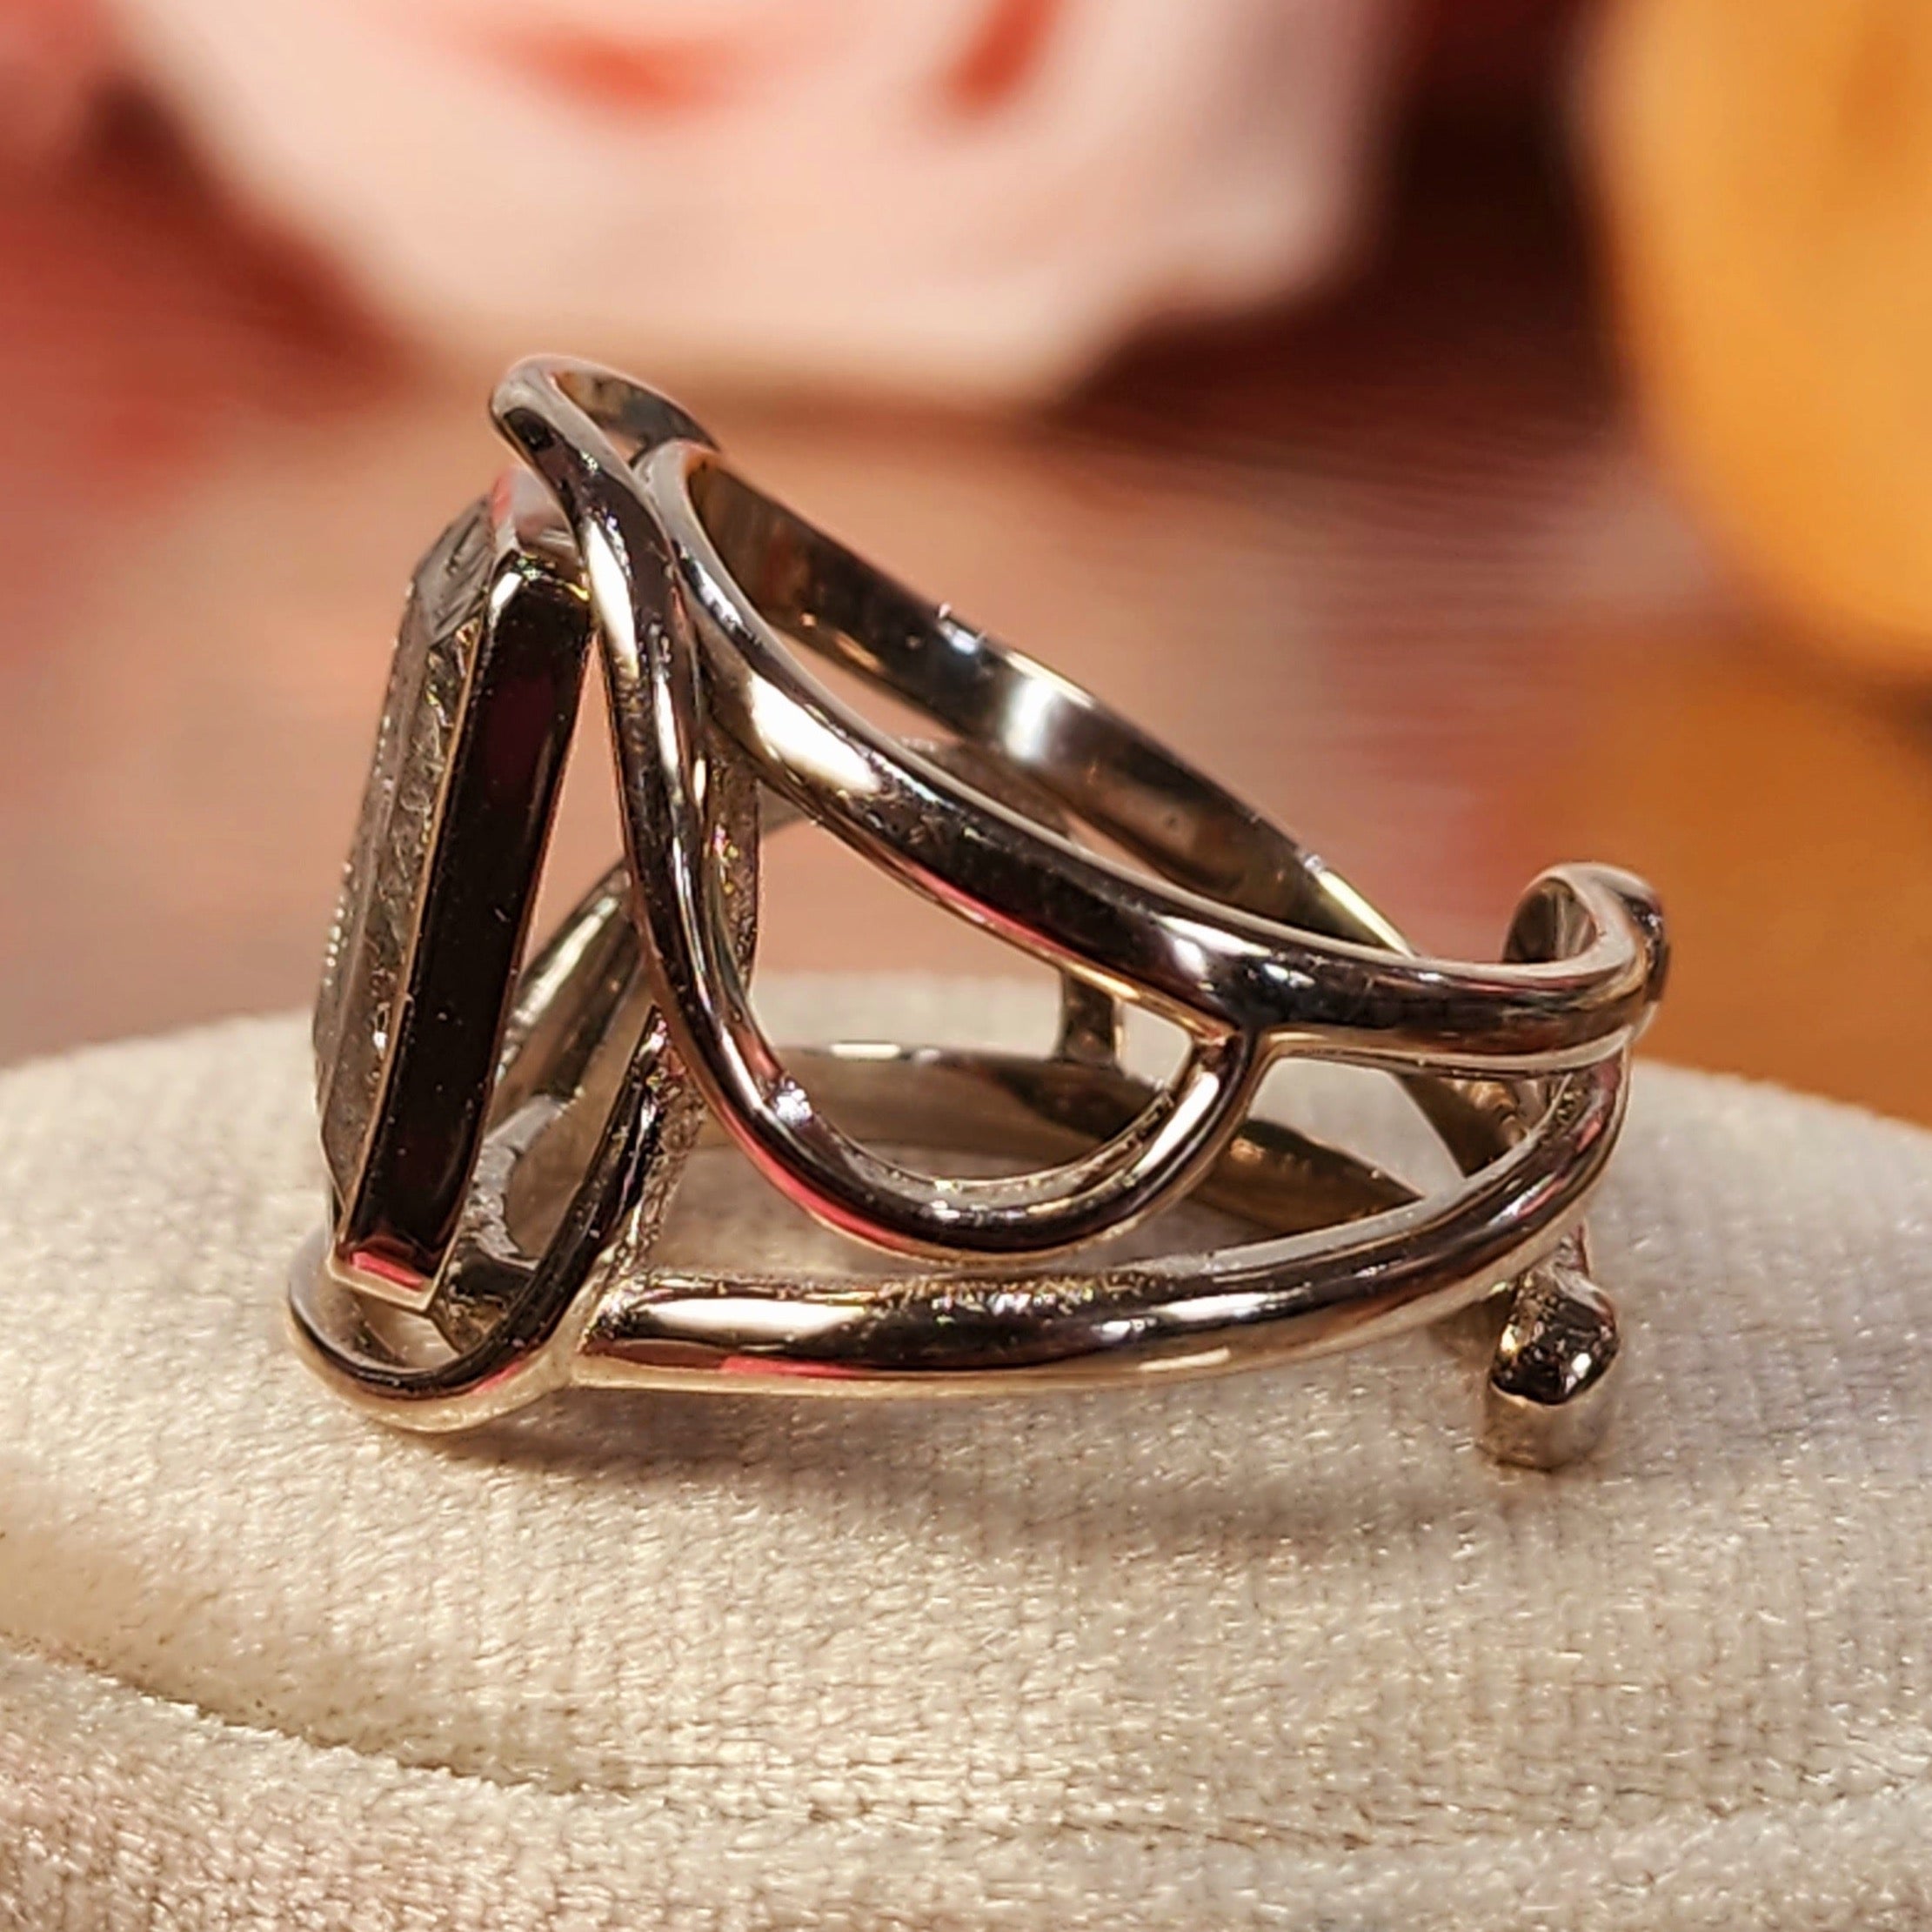 Meteorite Finger Cuff .925 Sterling Silver Adjustable Ring for Spiritual Awakening